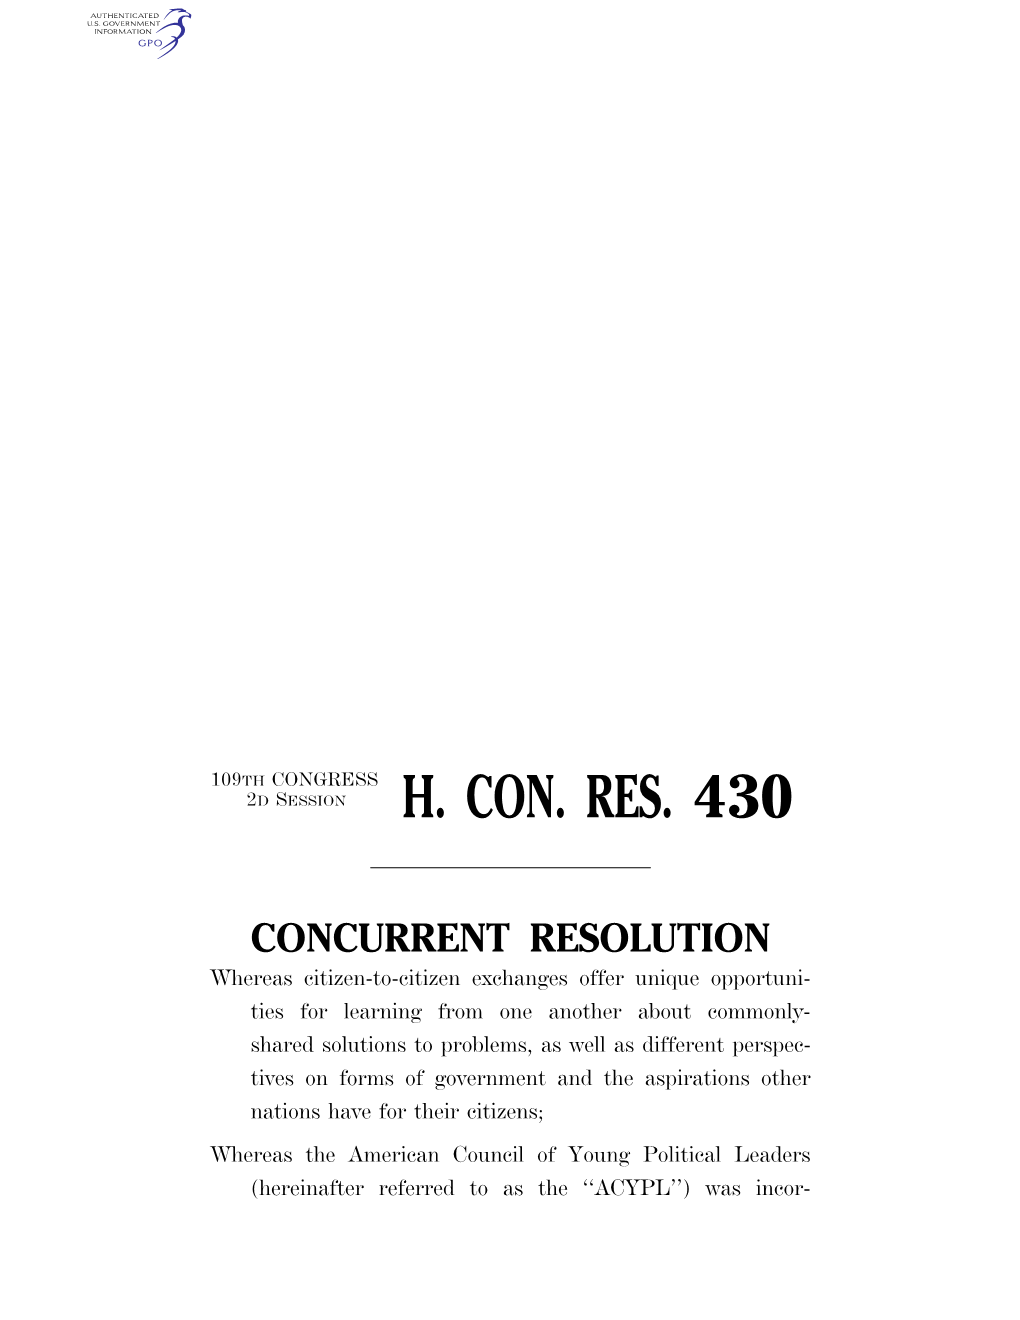 H. Con. Res. 430